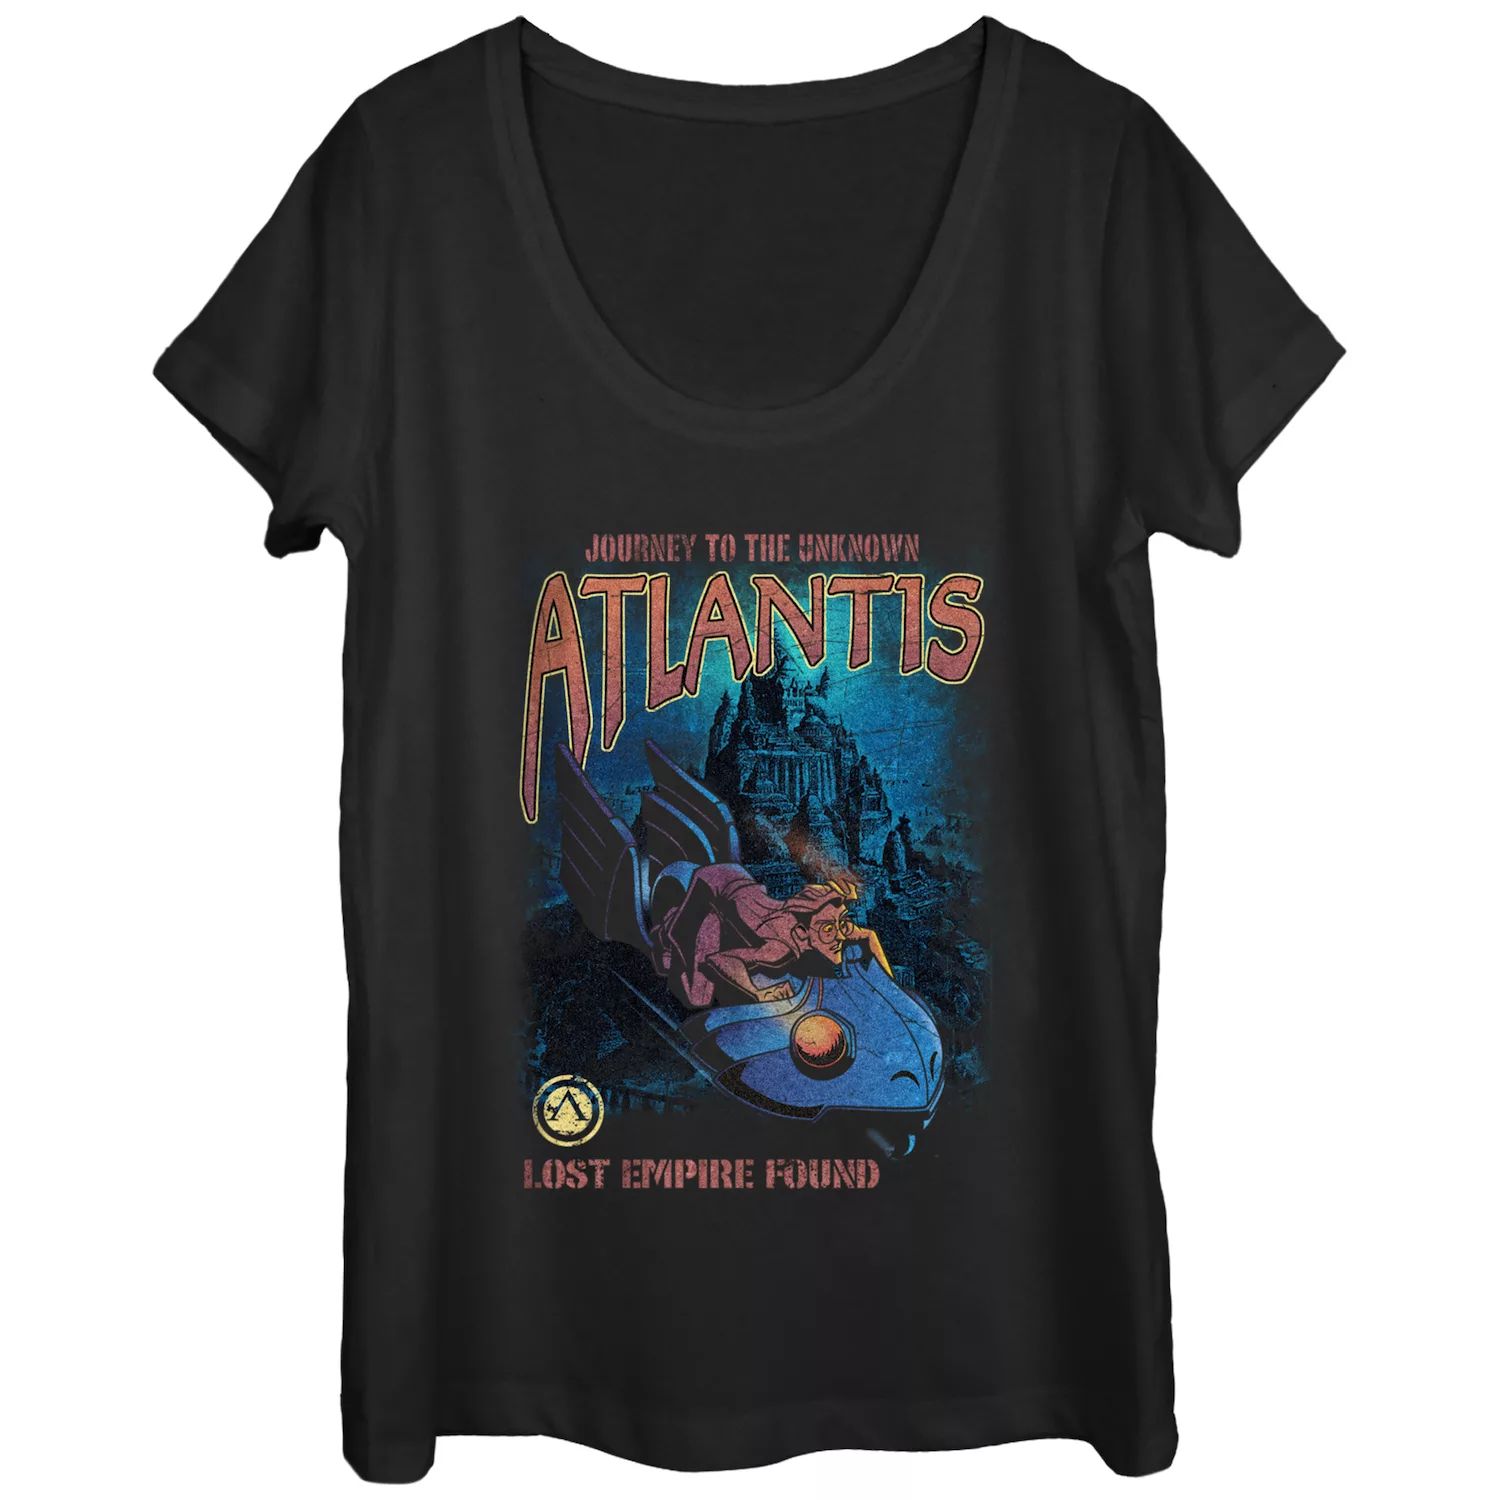 Футболка Disney Atlantis Journey To The Unknown для юниоров Licensed Character the journey to atlantis